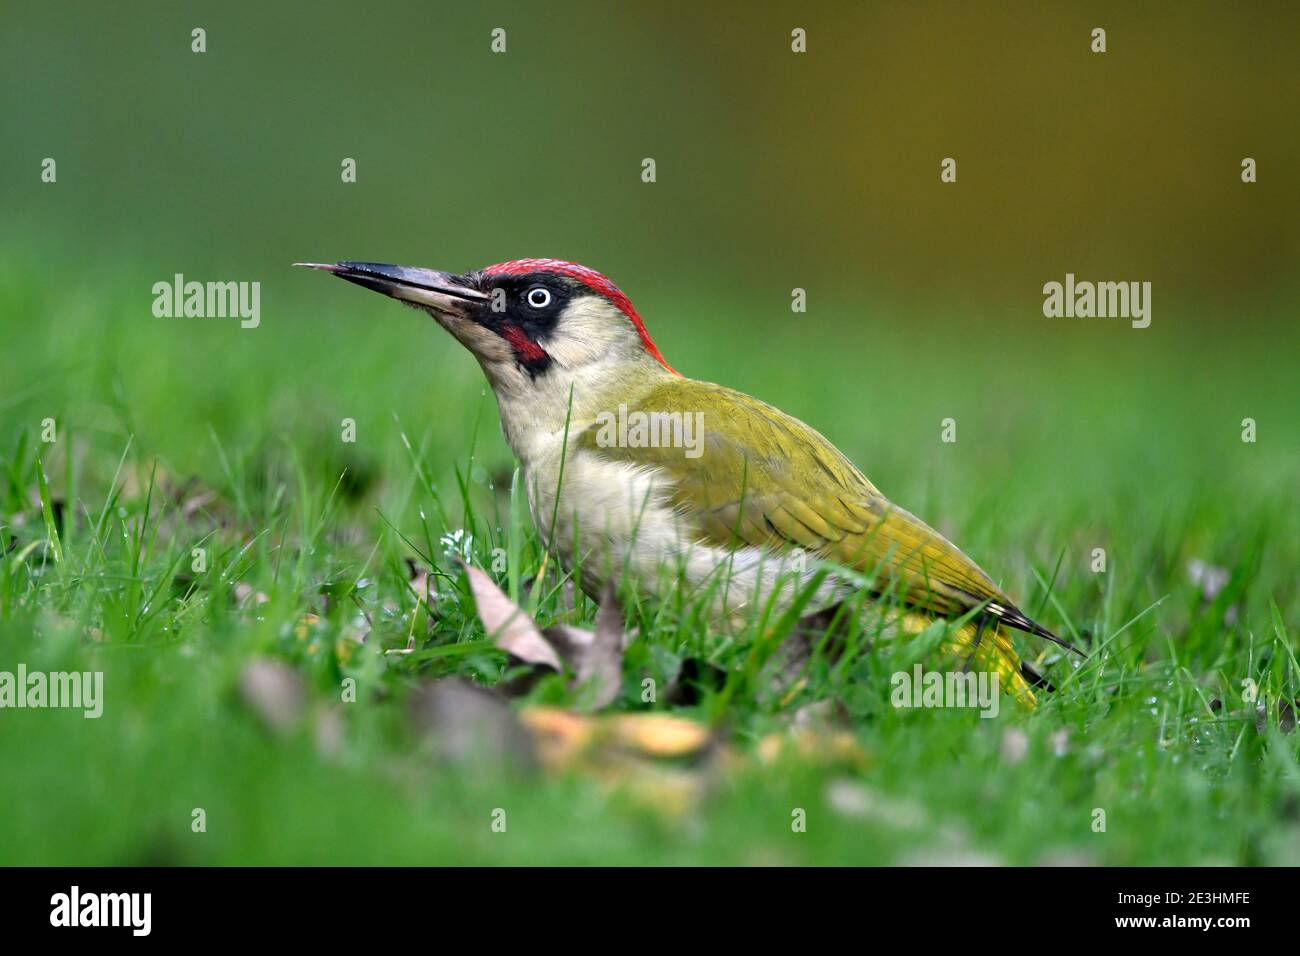 Green Woodpecker (Picus viridis) homme assis sur un sol herbacé, langue allongée, pays de Galles, novembre Banque D'Images